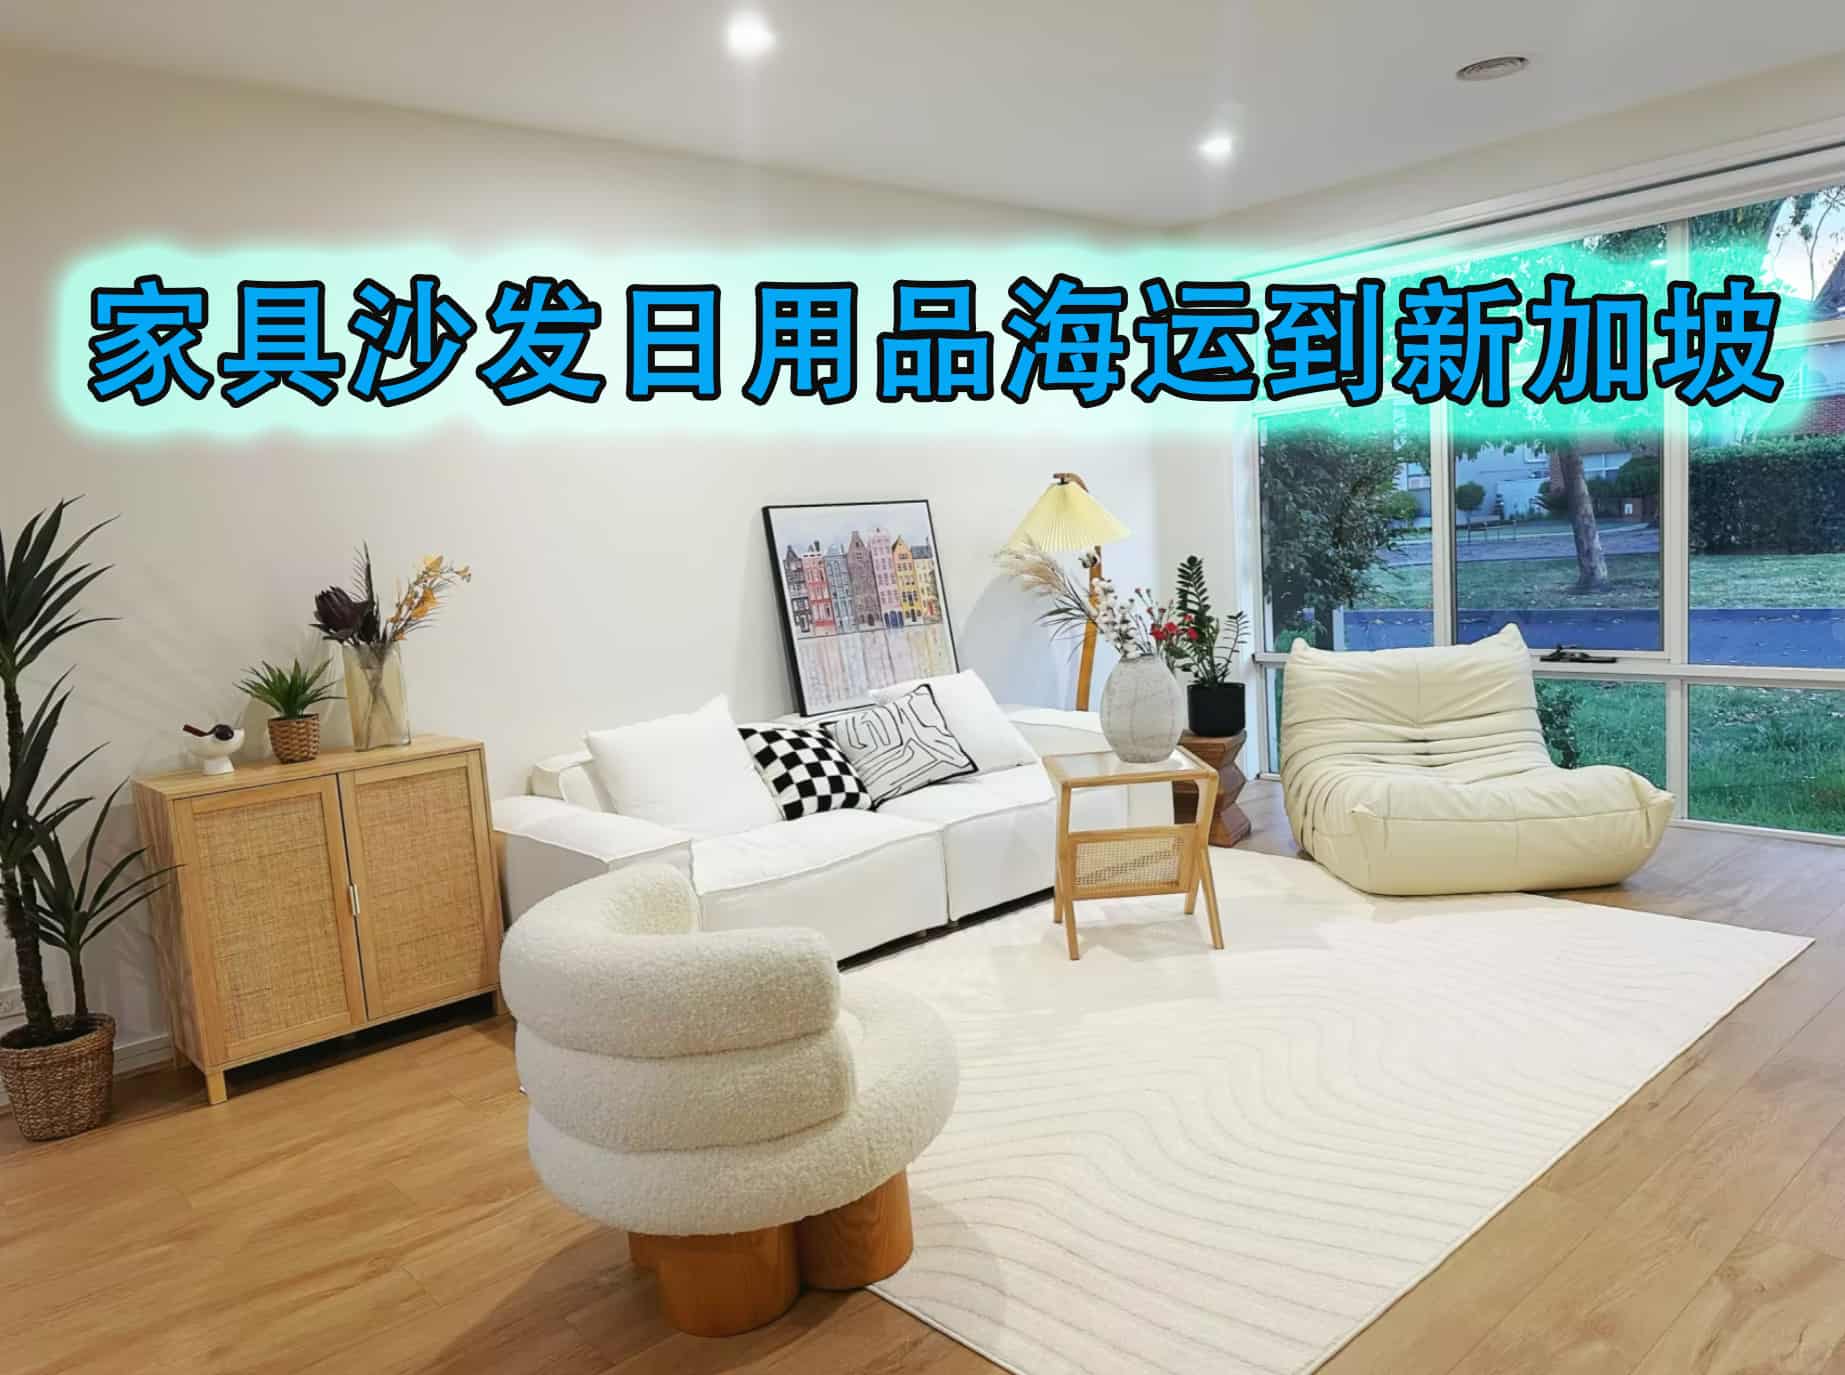 家具沙发日用品海运到新加坡多少钱？如何计算？操作流程是怎样的？